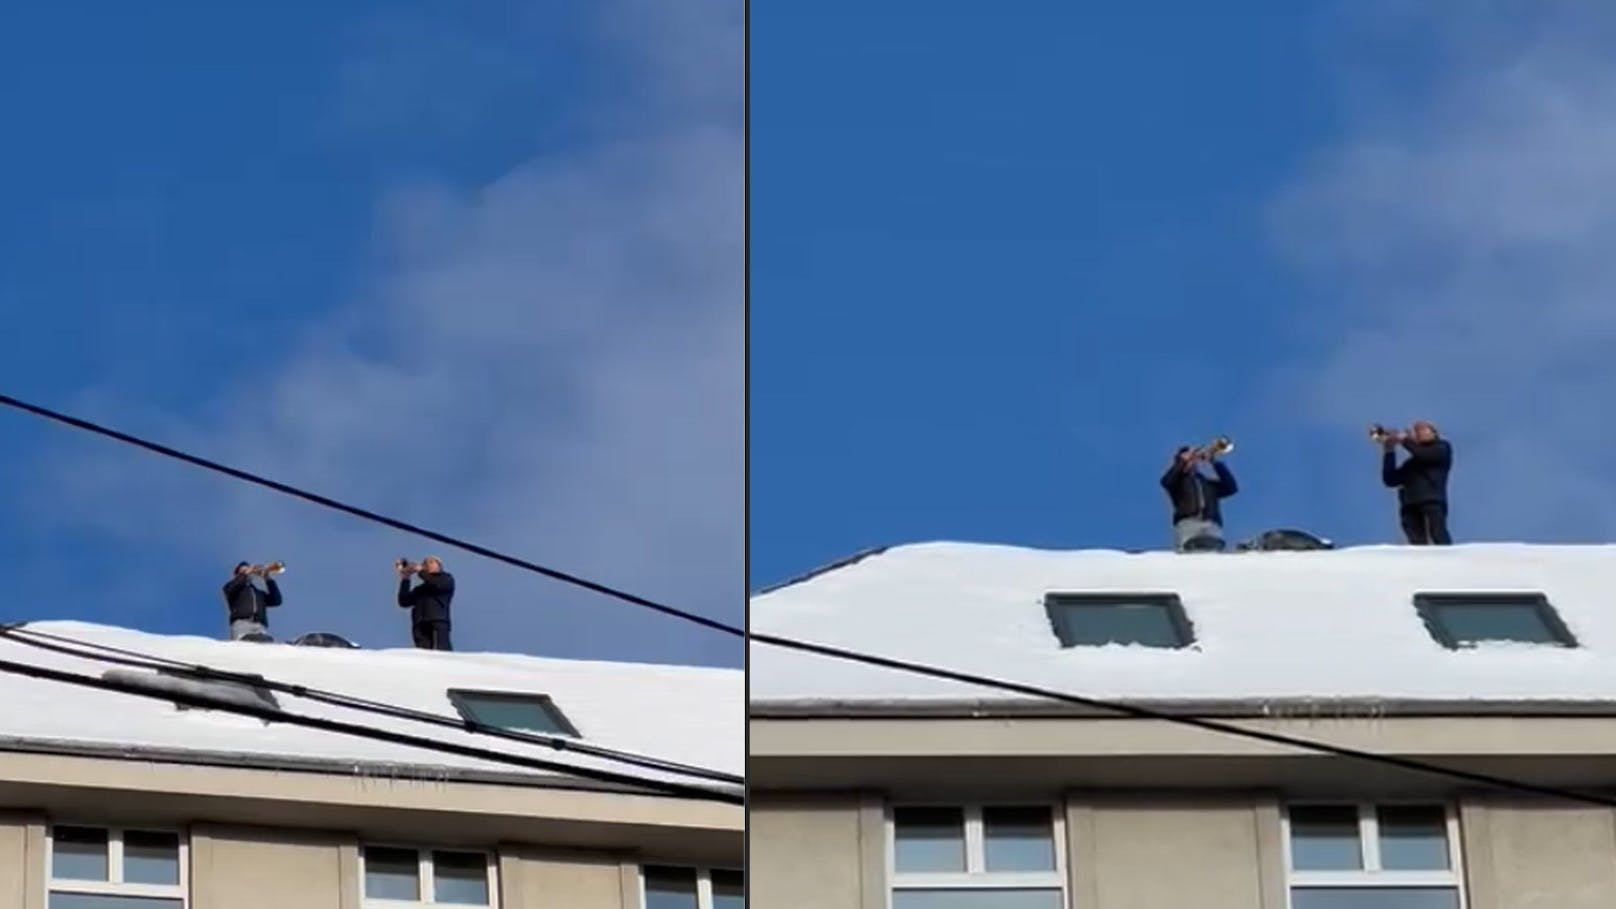 Wiener klettern mit Trompete auf Dach, geben Konzert